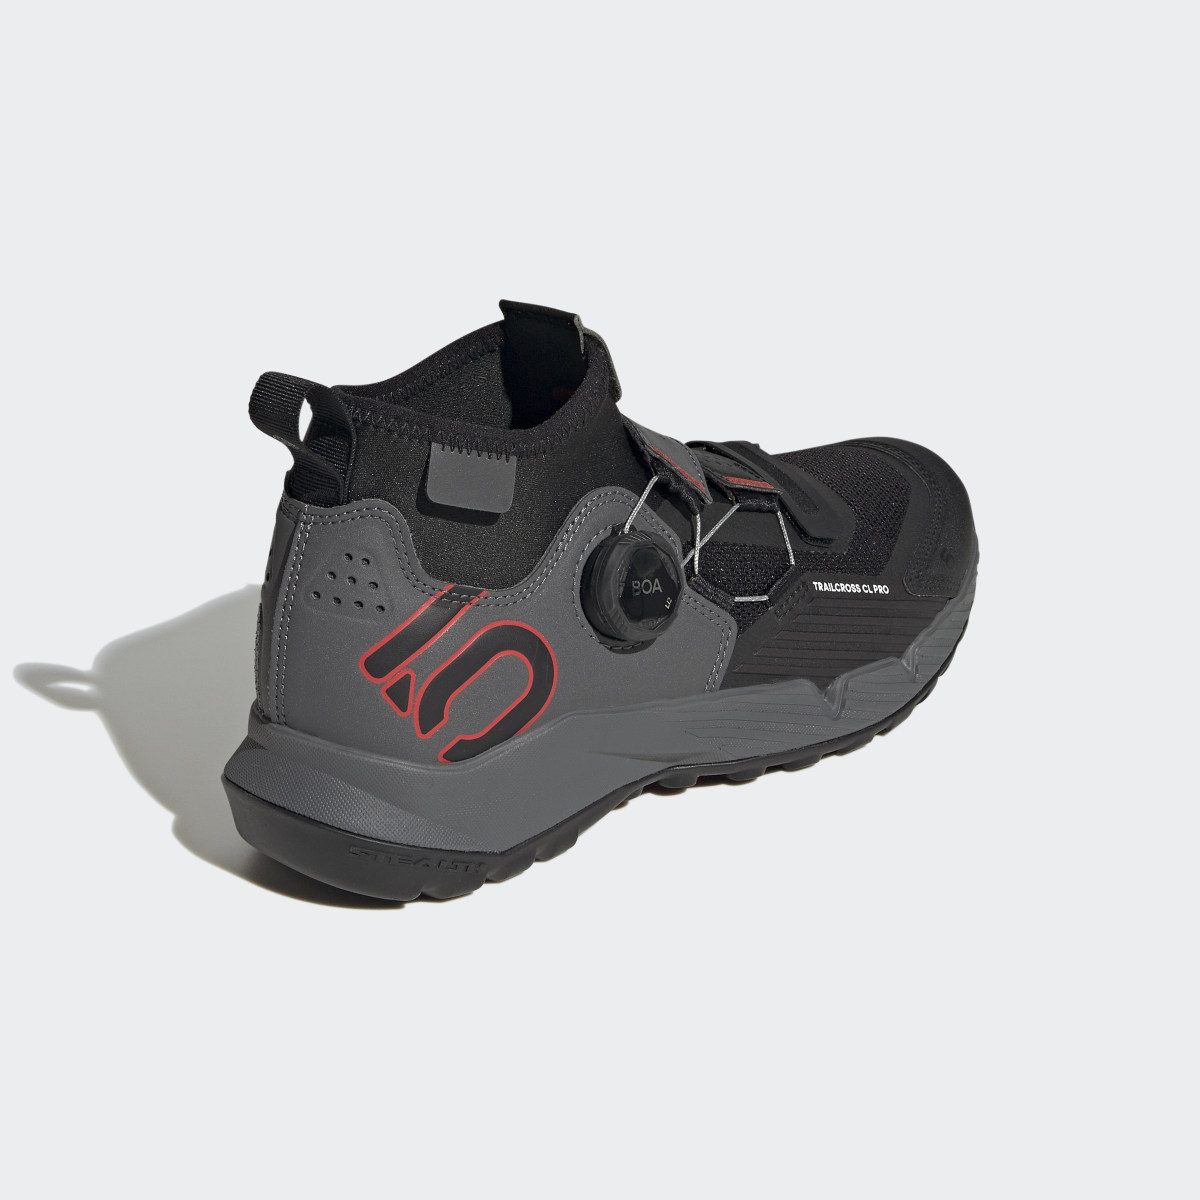 Adidas Five Ten Trailcross Pro Clip-In Mountain Biking Shoes. 6